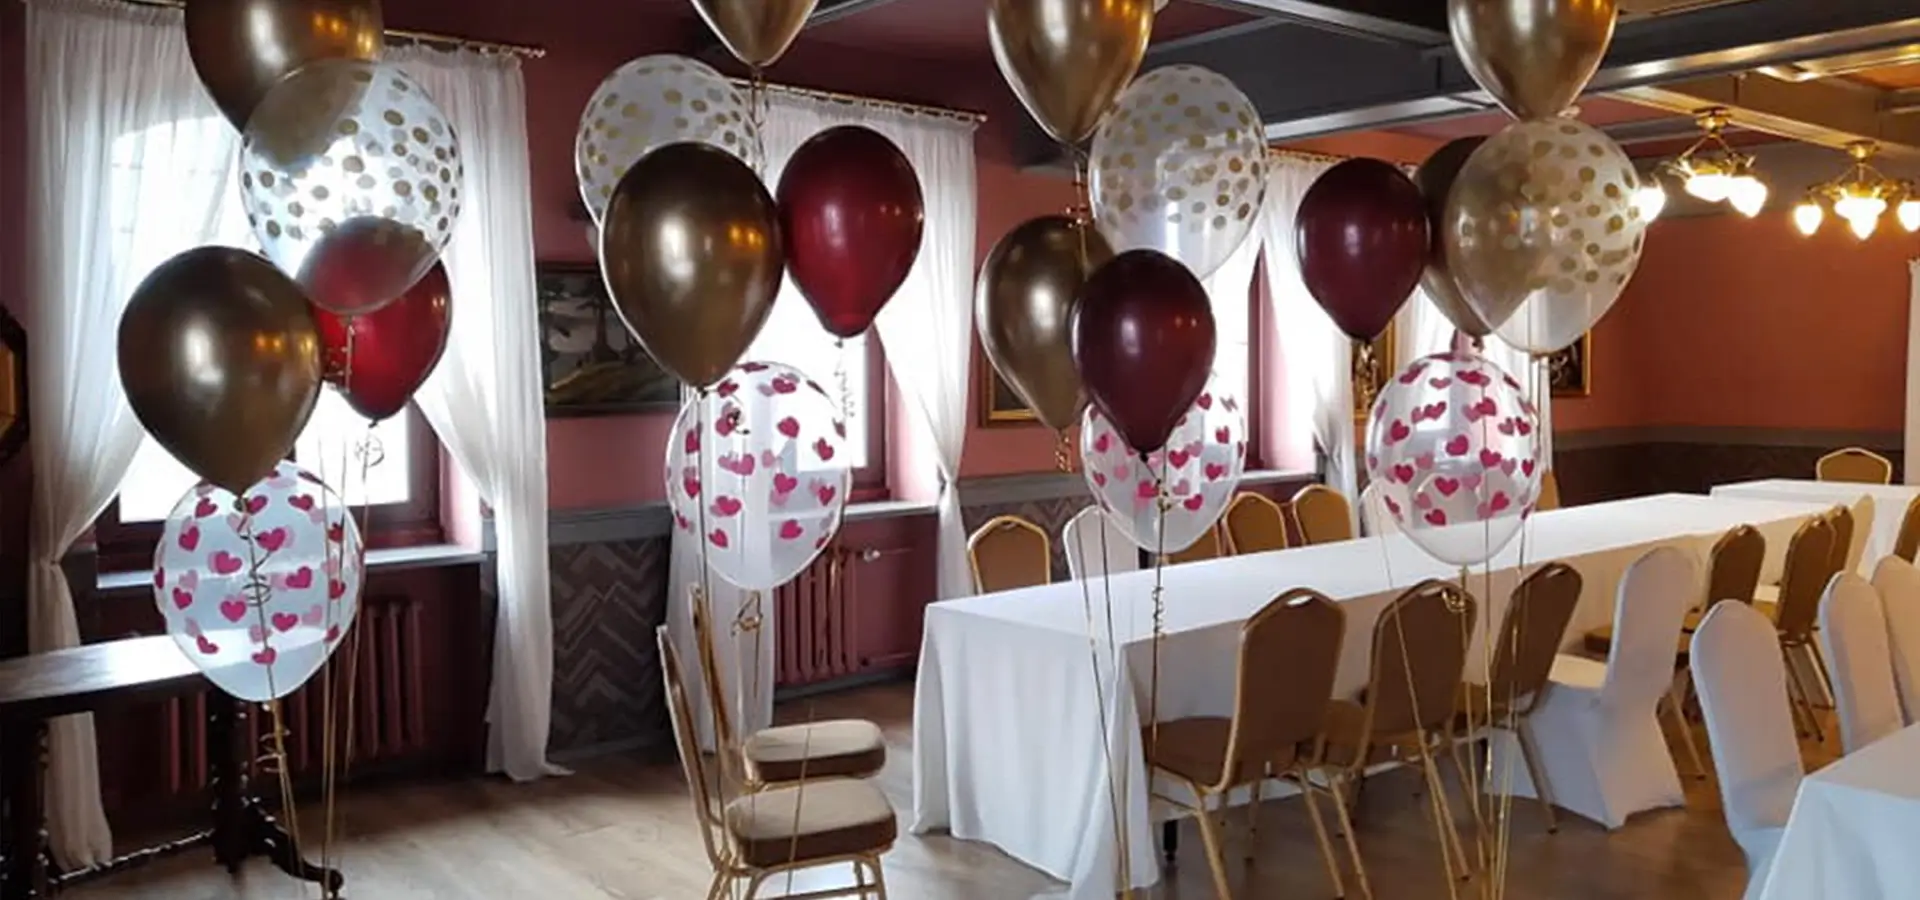 balony, stół z białym obrusem